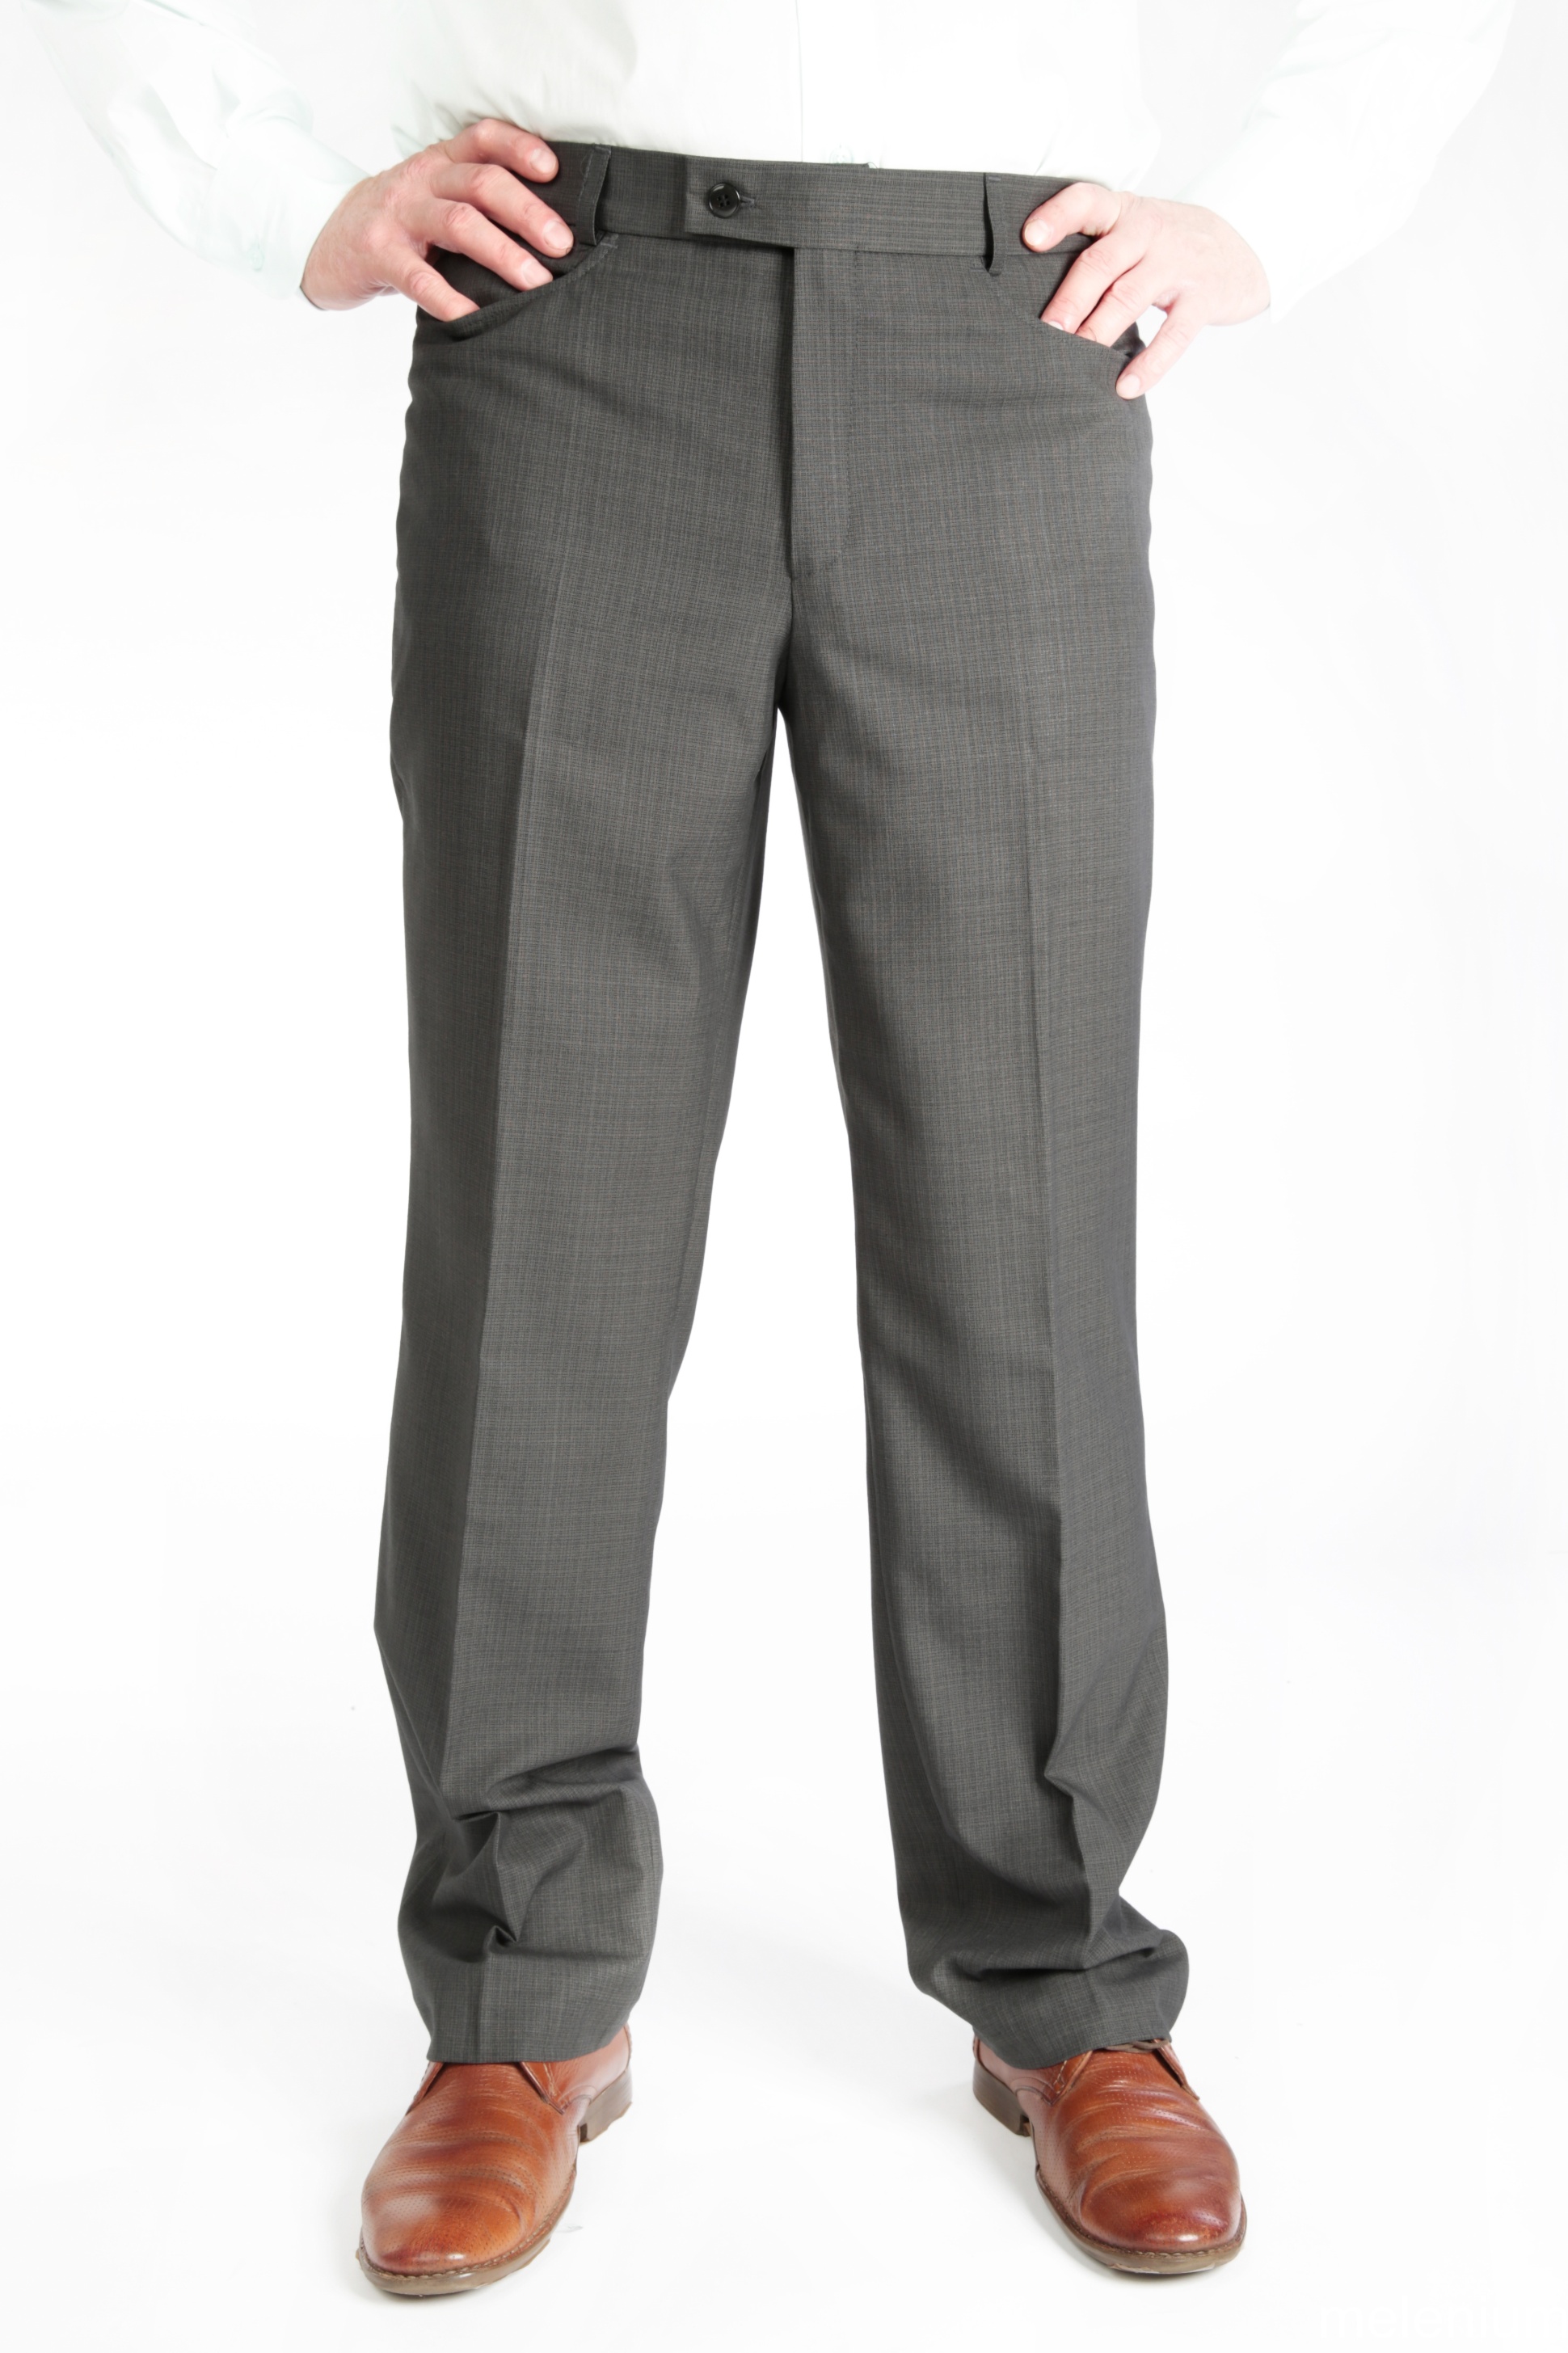 Купить брюки мужские серые 0838-1 французский карман по цене 2 500 руб. вМоскве - интернет-магазин «Мир брюк»